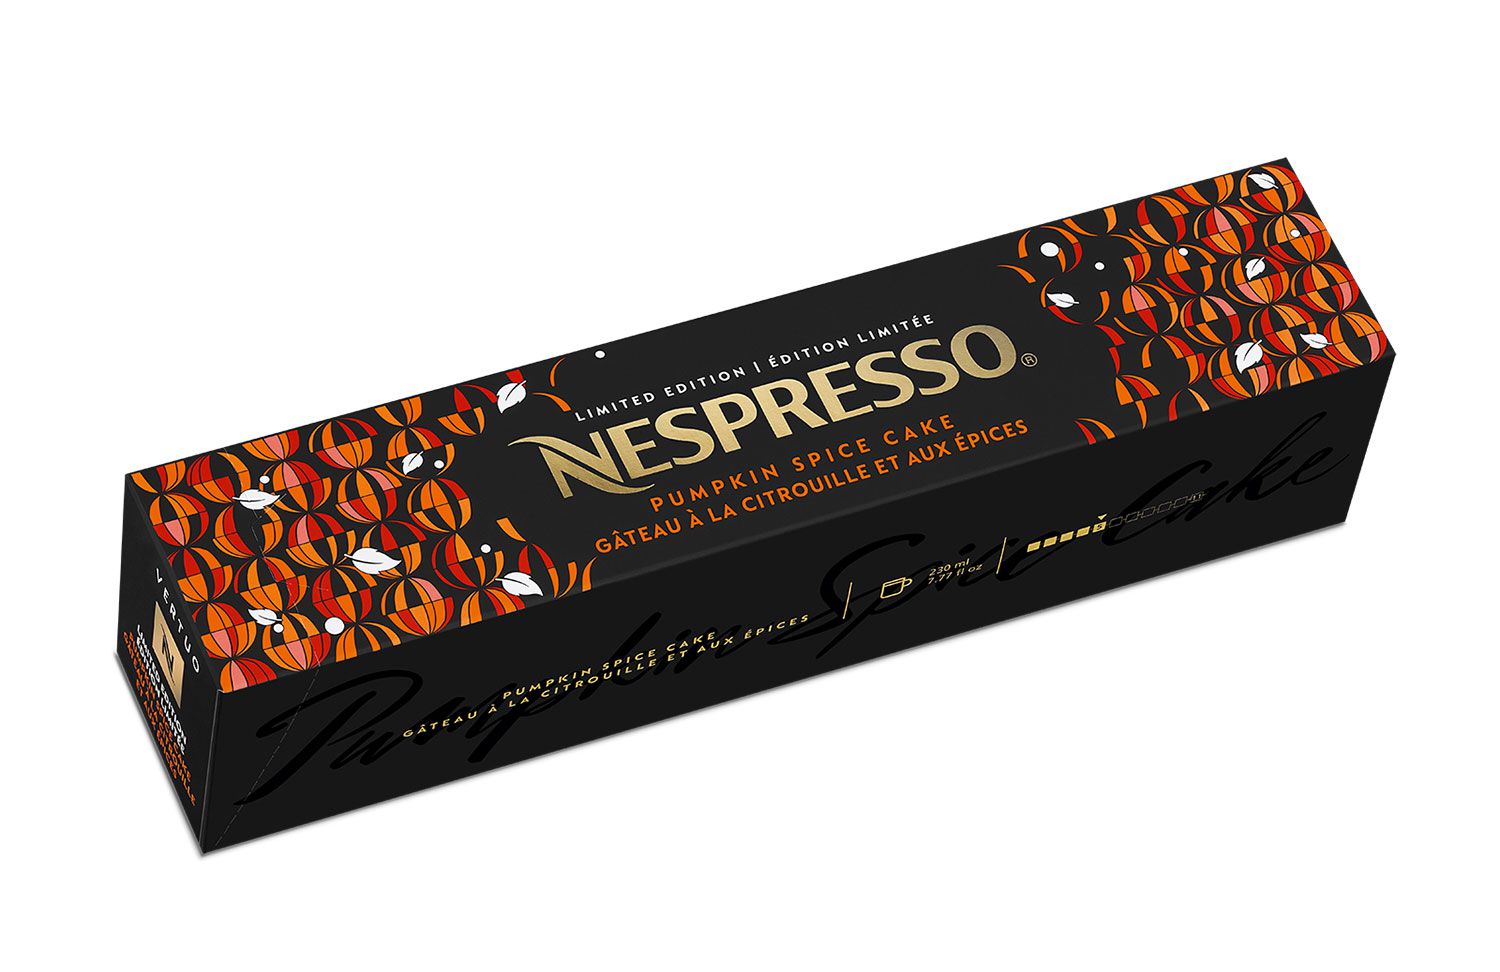 Nespresso Pumpkin Spice Cake Pods